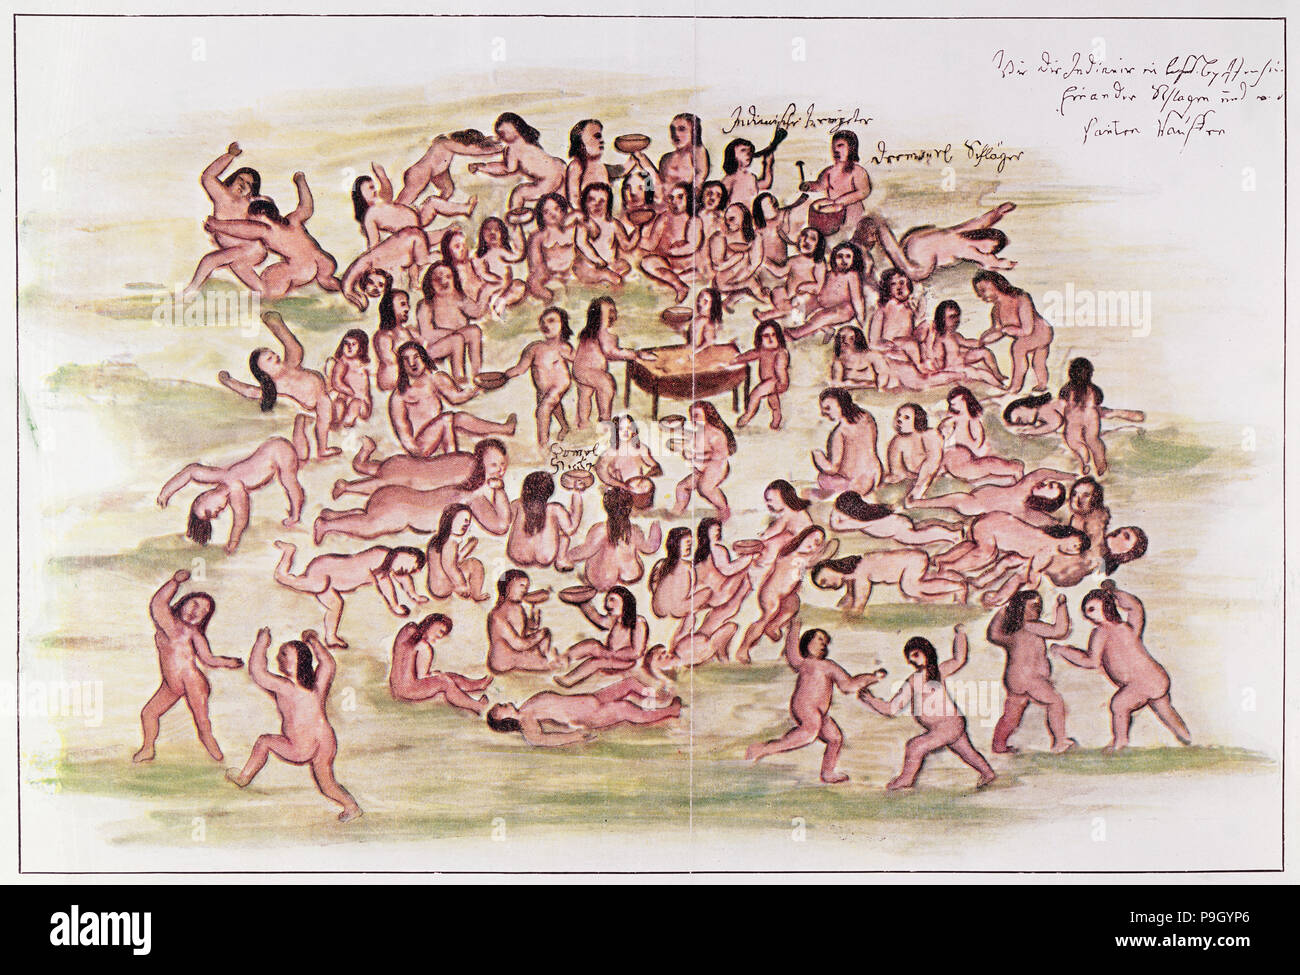 Descubrimiento y conquista de América, los efectos del alcohol sobre los indios, el dibujo del libro "... Foto de stock